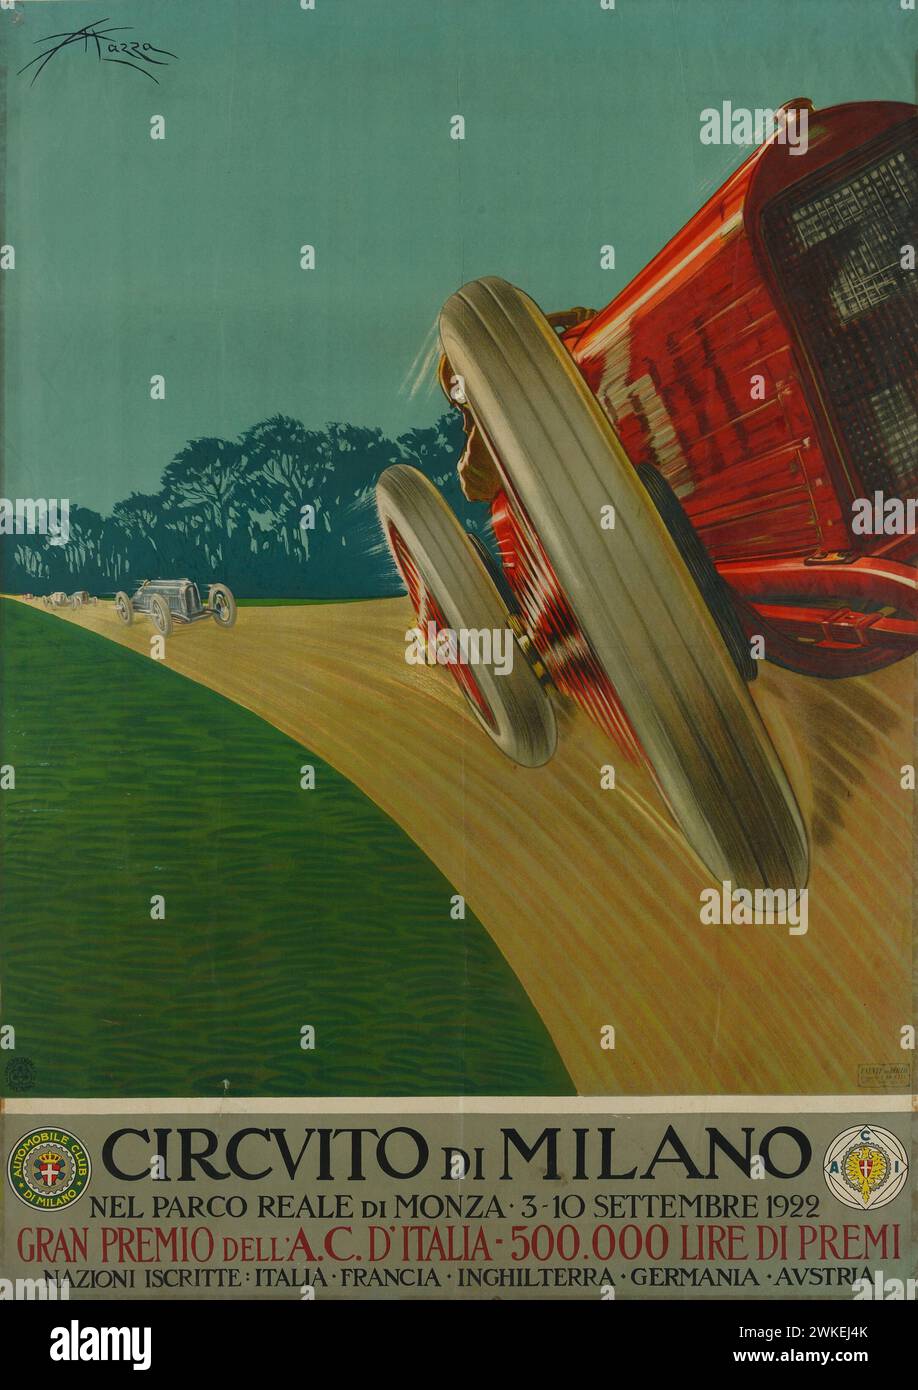 Circuito di Milano nel Parco reale di Monza. Museo: Museo Nazionale Collezione salce, Treviso. Autore: ALDO MAZZA. Foto Stock